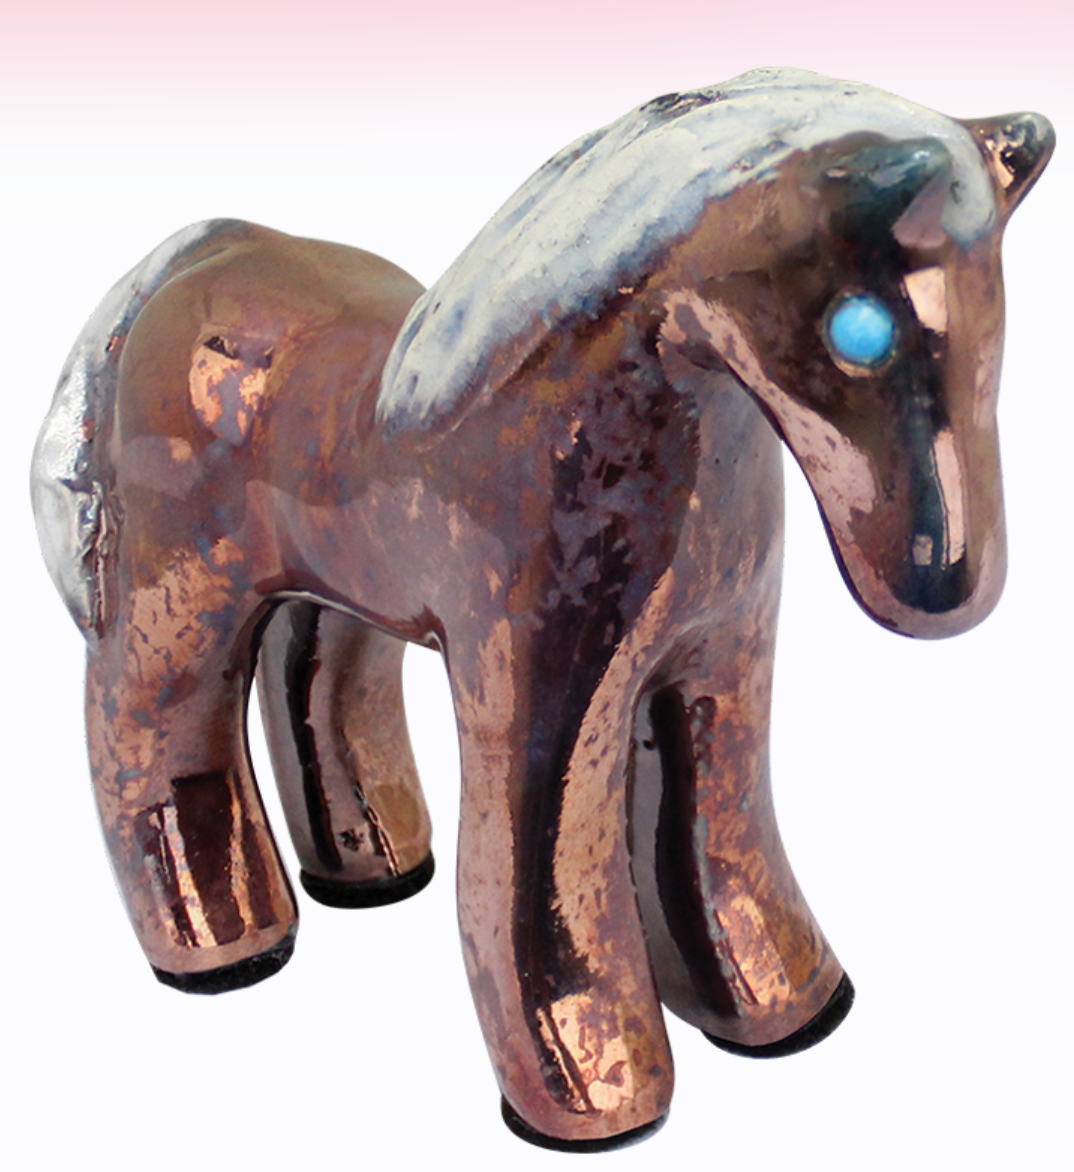 Spirit Friends Pony (3") from Raku Pottery